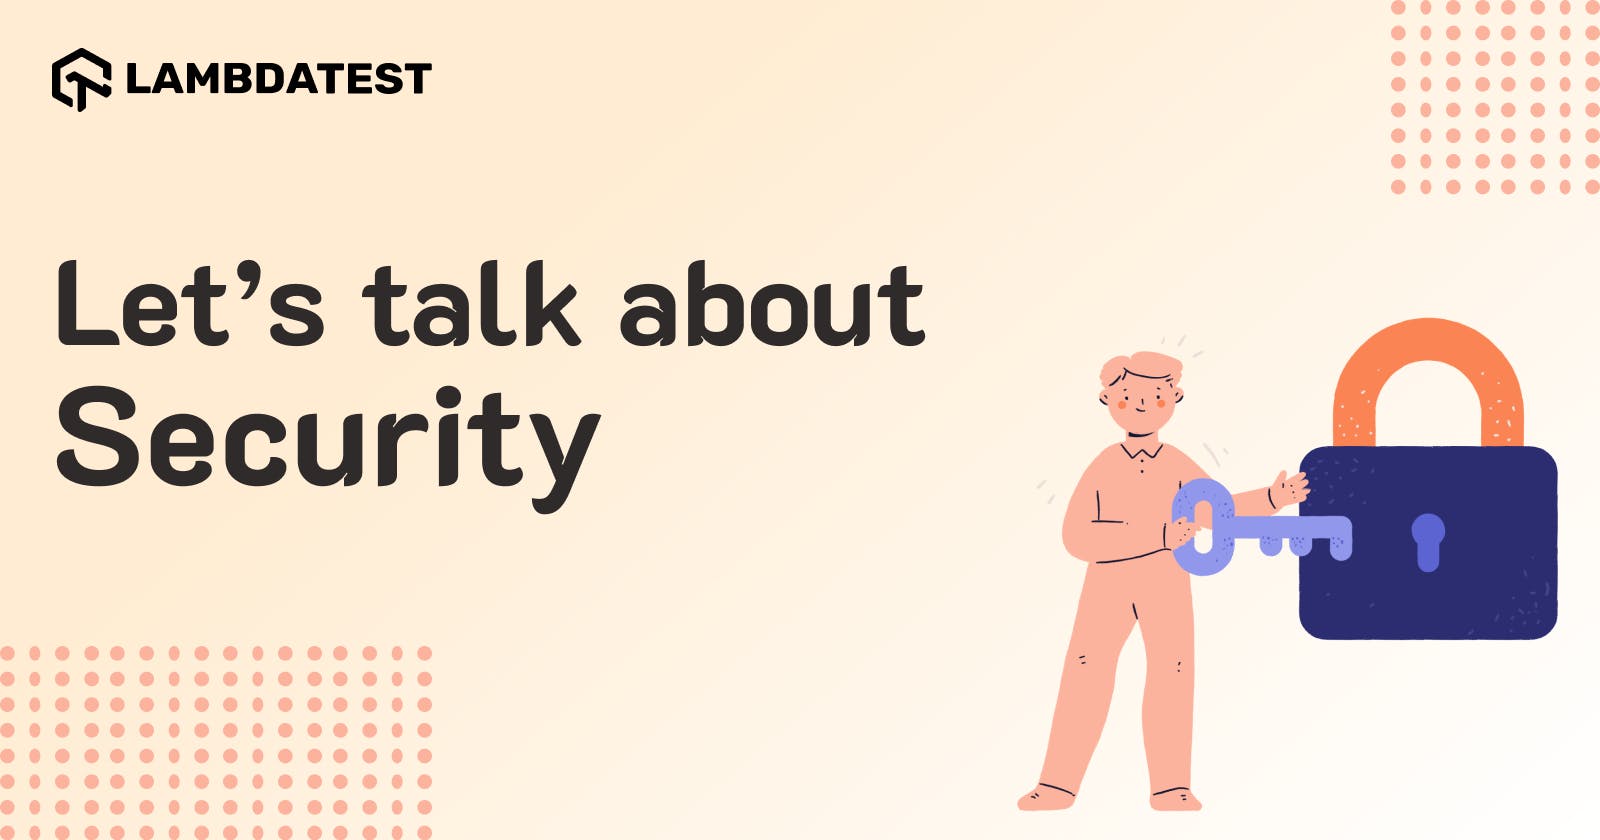 LambdaTest: Let’s talk about Security